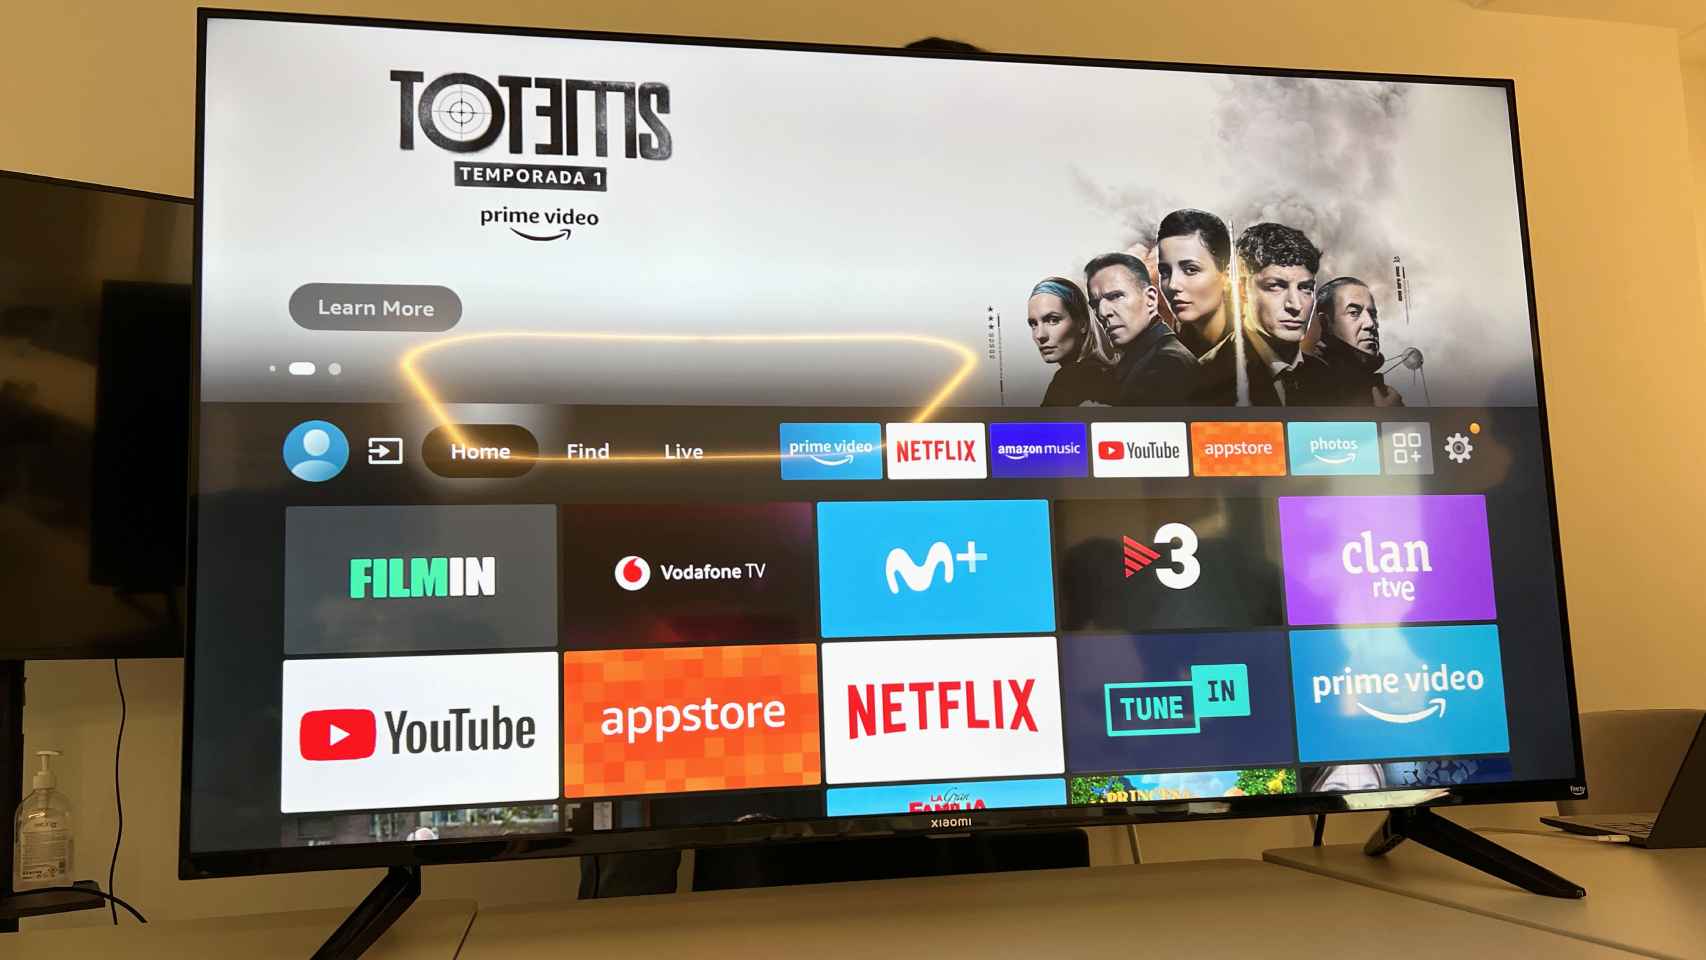 Aplicaciones de streaming en la pantalla de un televisor.